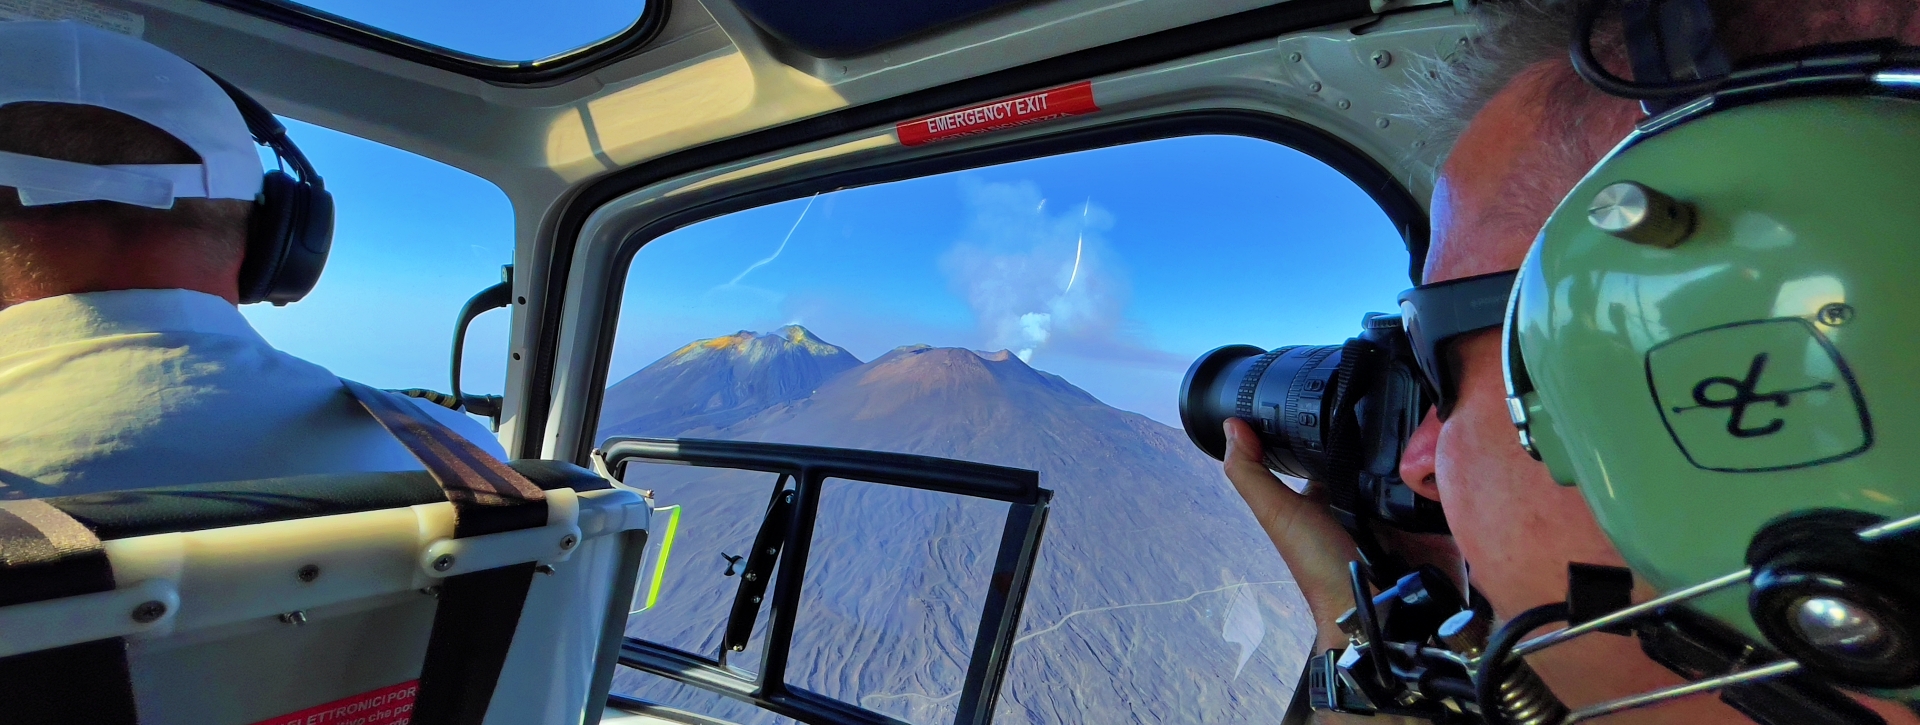 Tour Hélicoptère Etna